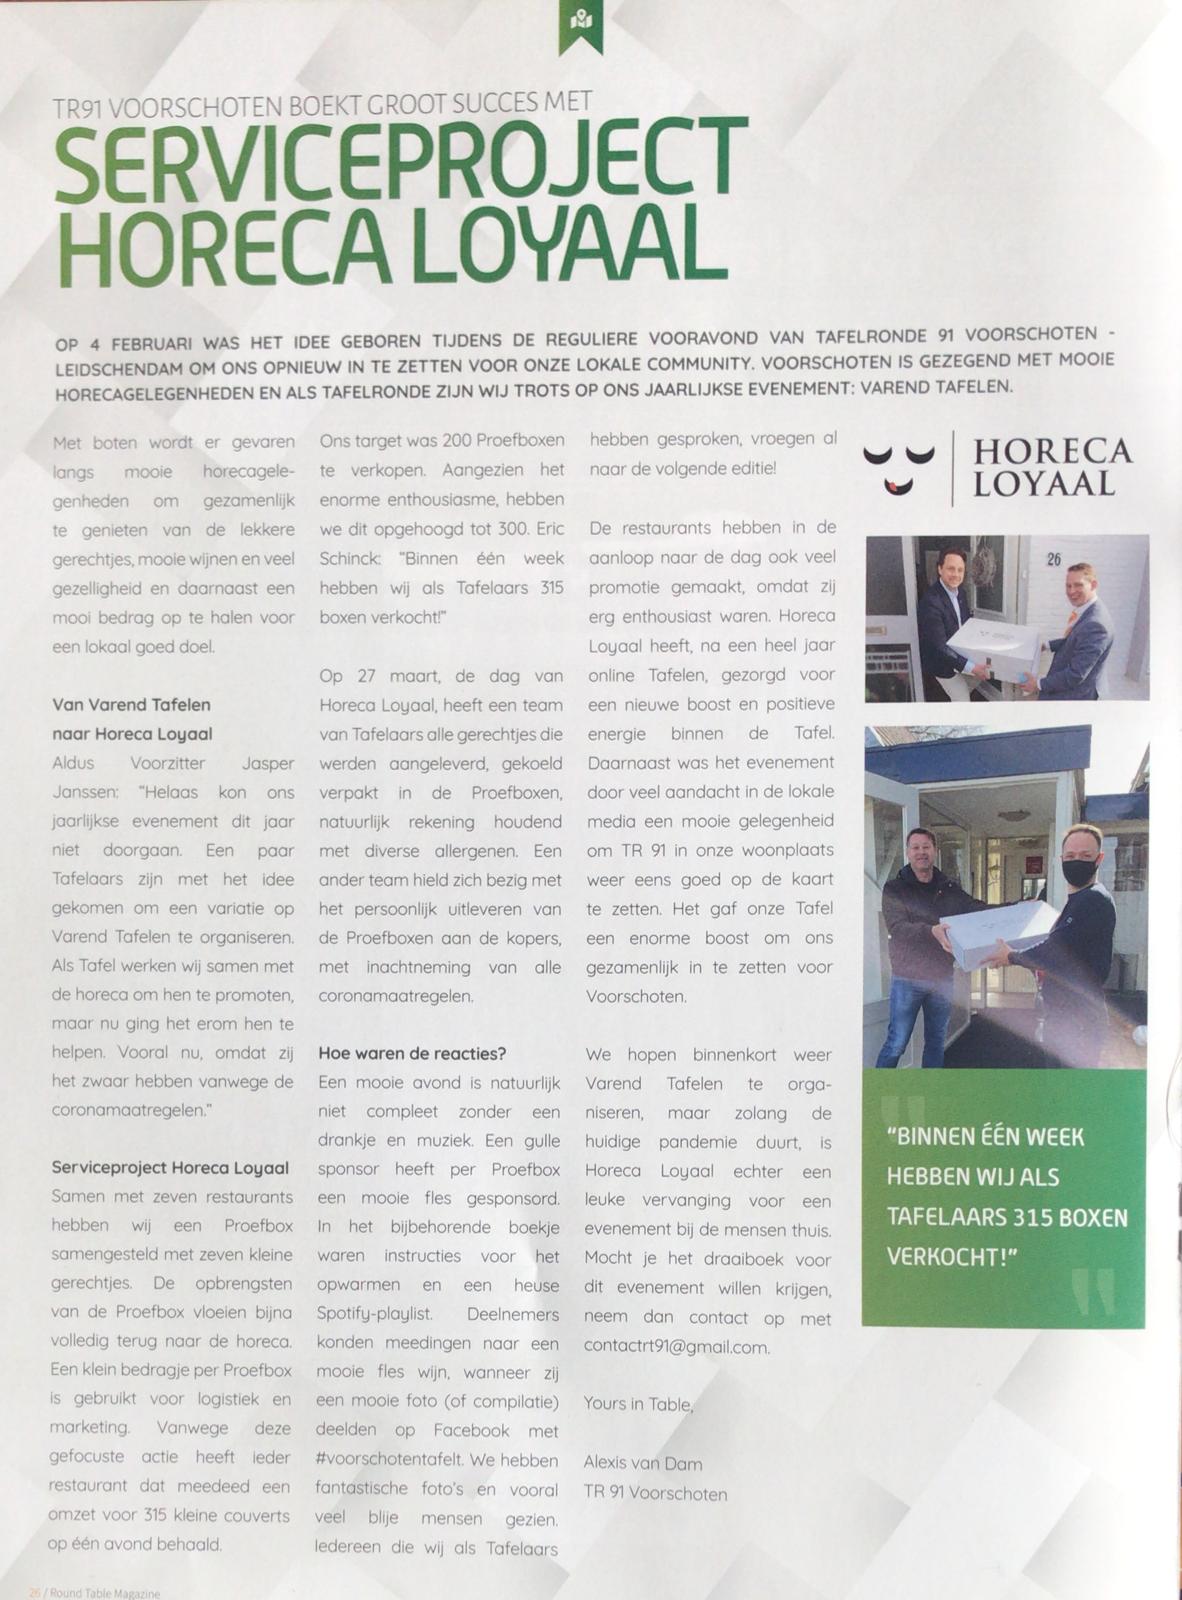 Je bekijkt nu Artikel in het magazine van de Nederlandse Tafelronde over Horeca Loyaal 2021